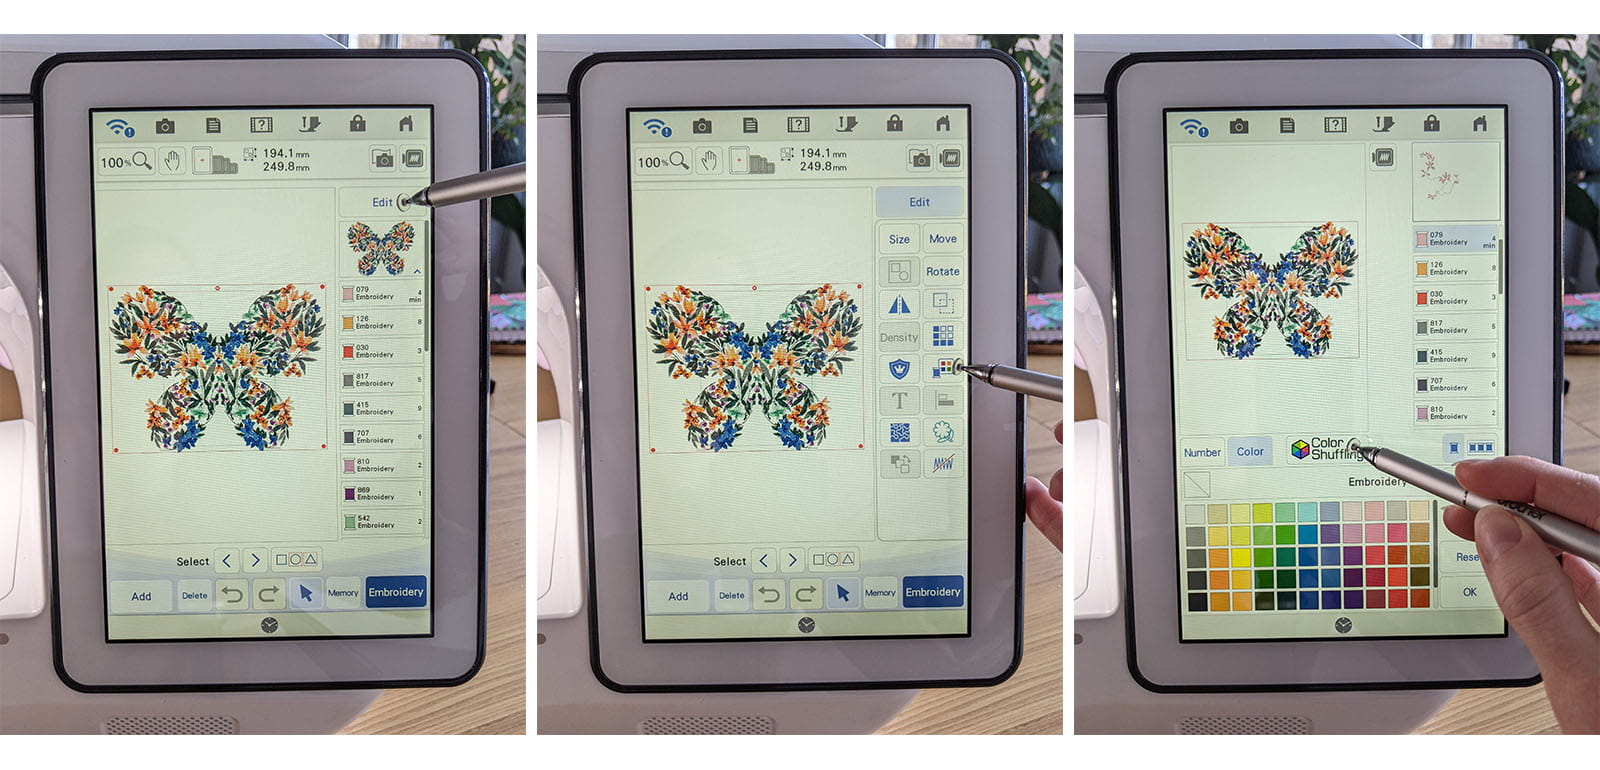 Stap-voor-stap afbeelding kiezen vlinder borduurpatroon op scherm